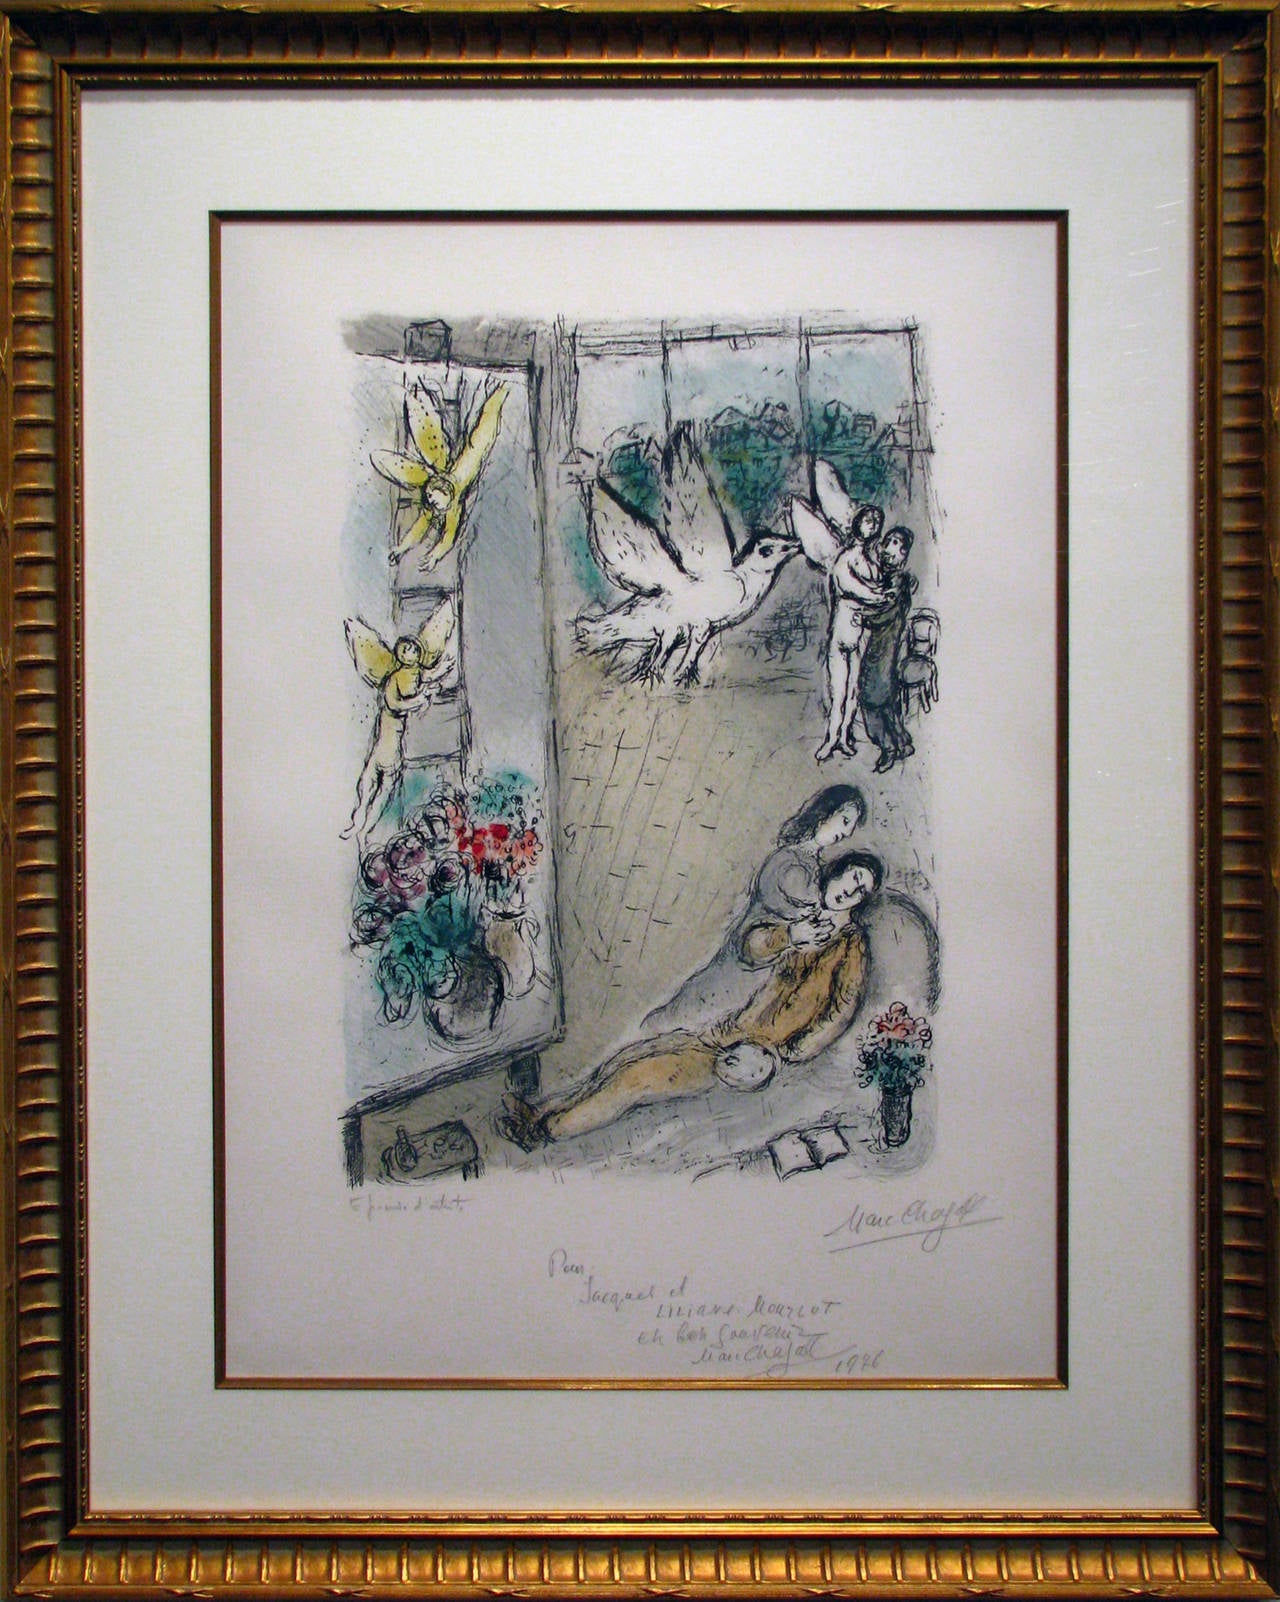 L'Oiseau dans L'Atelier - Print by Marc Chagall